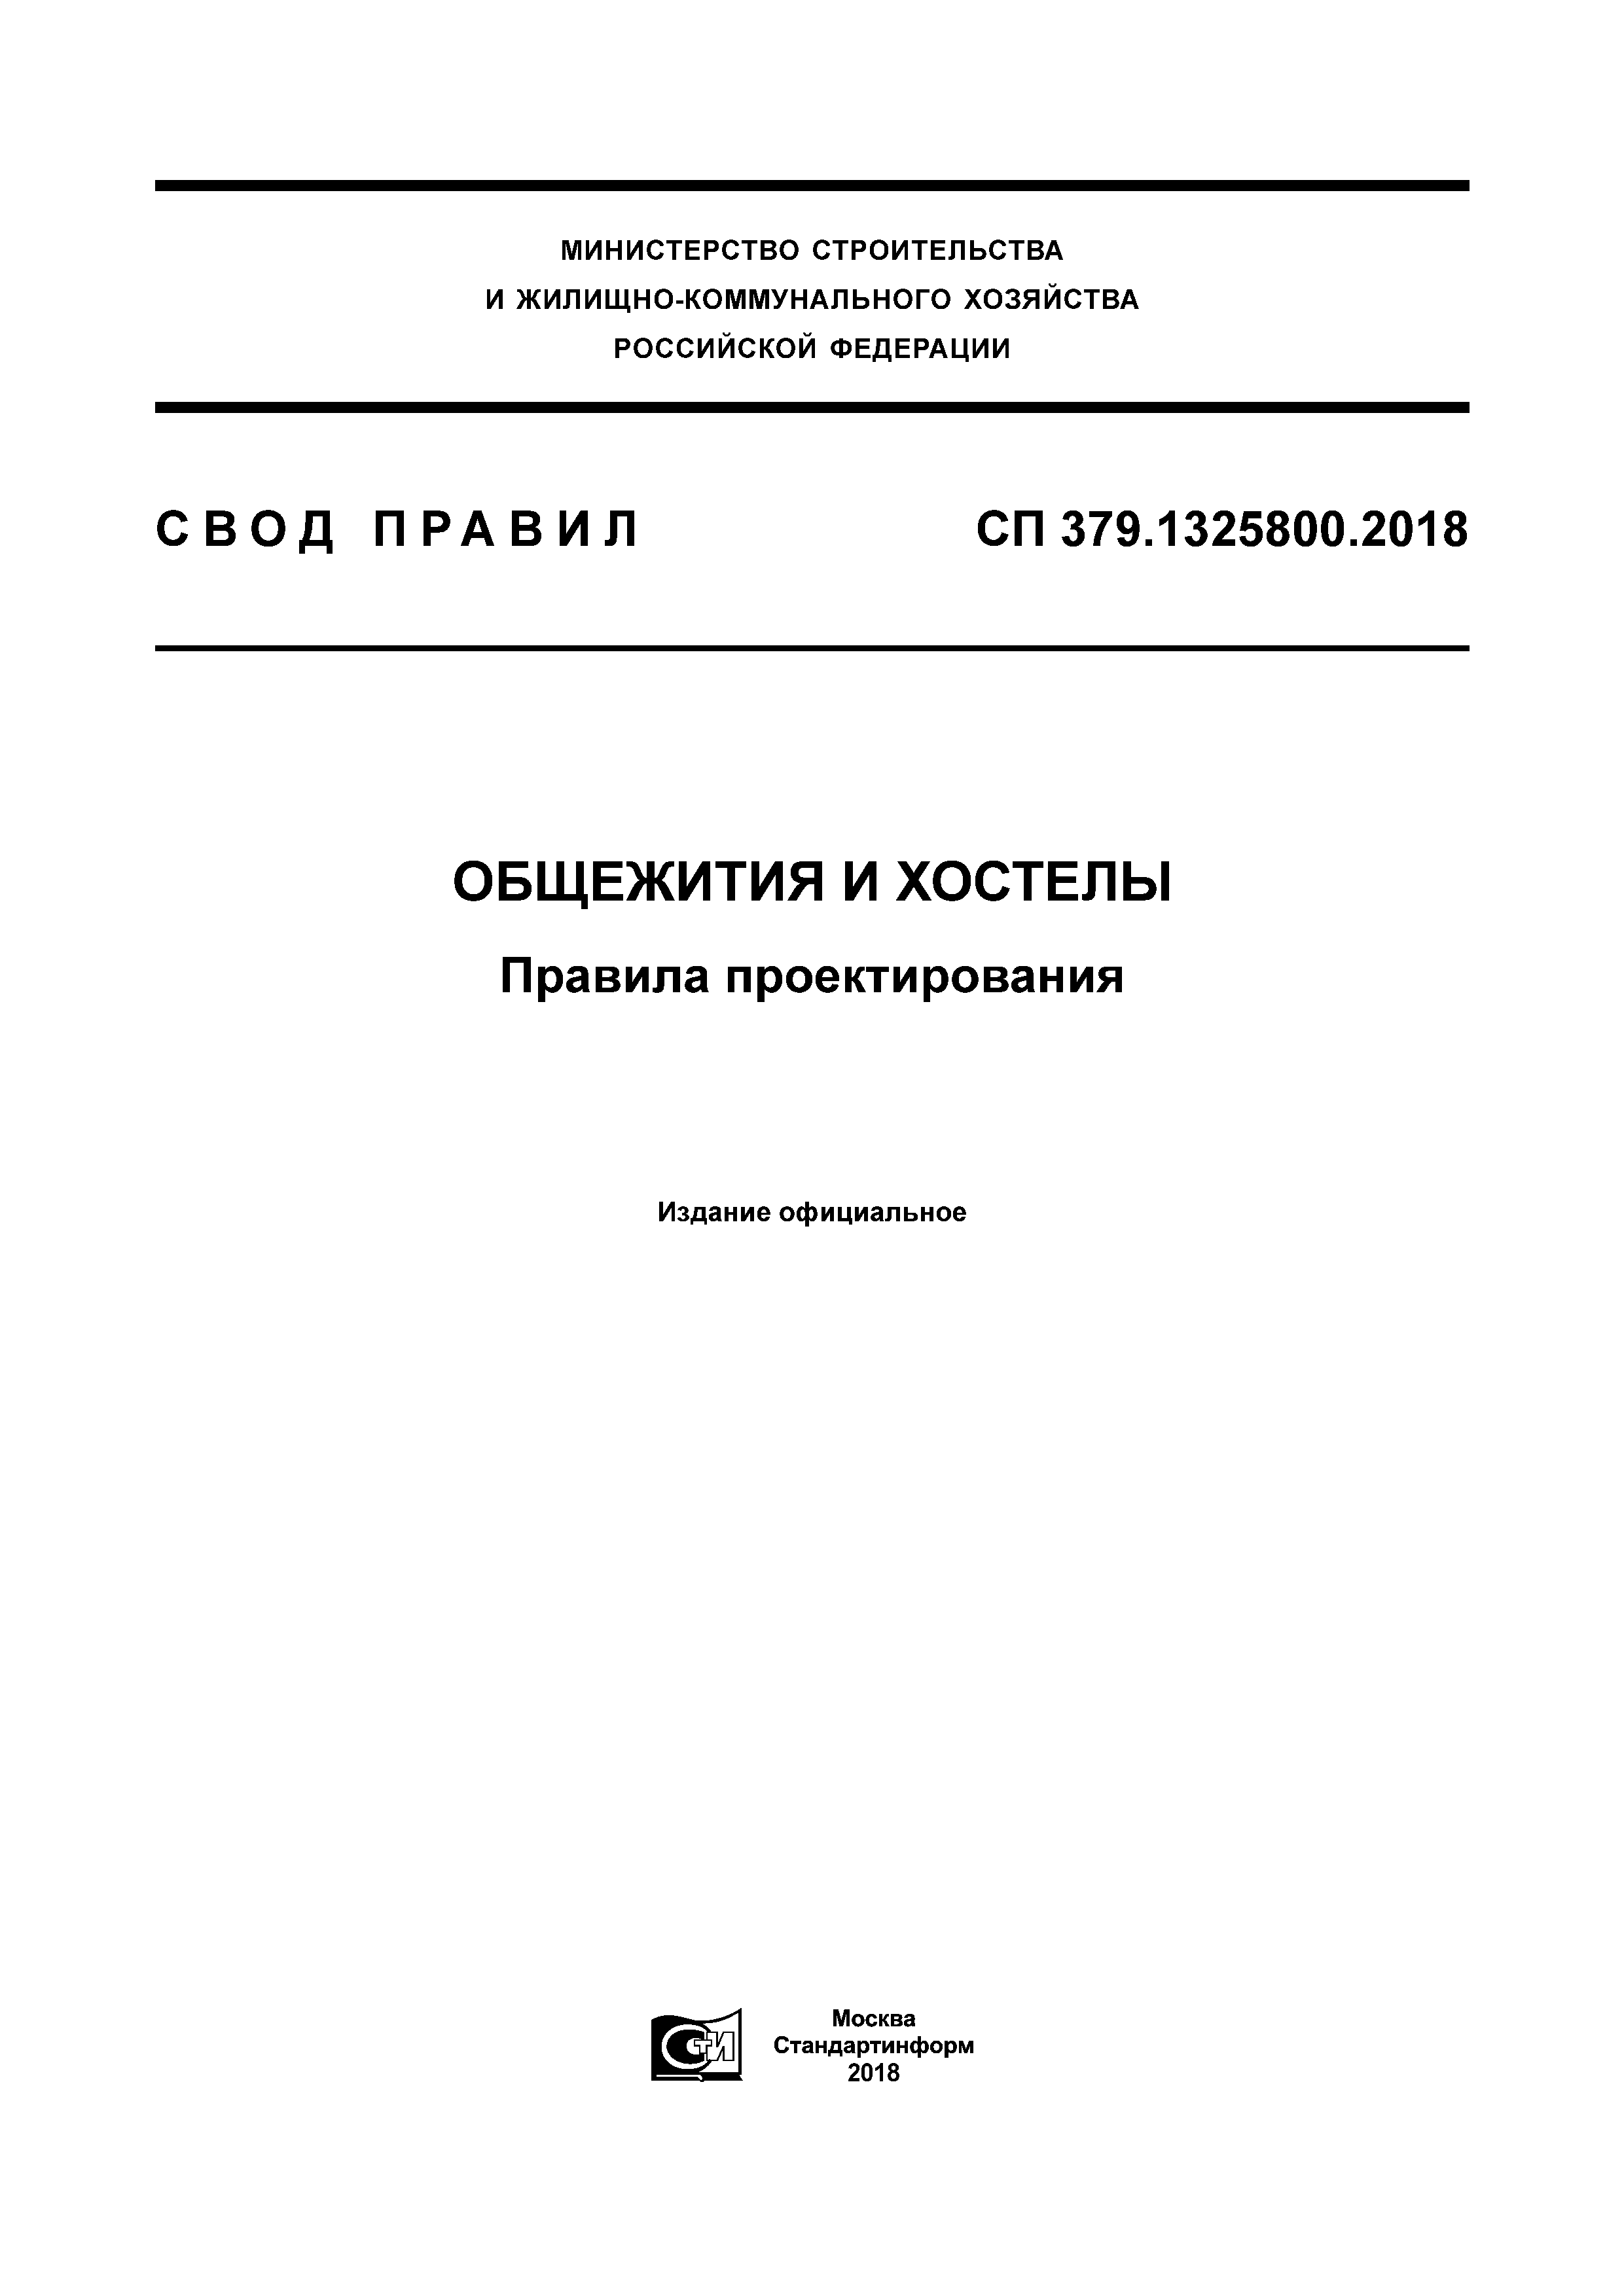 СП 379.1325800.2018